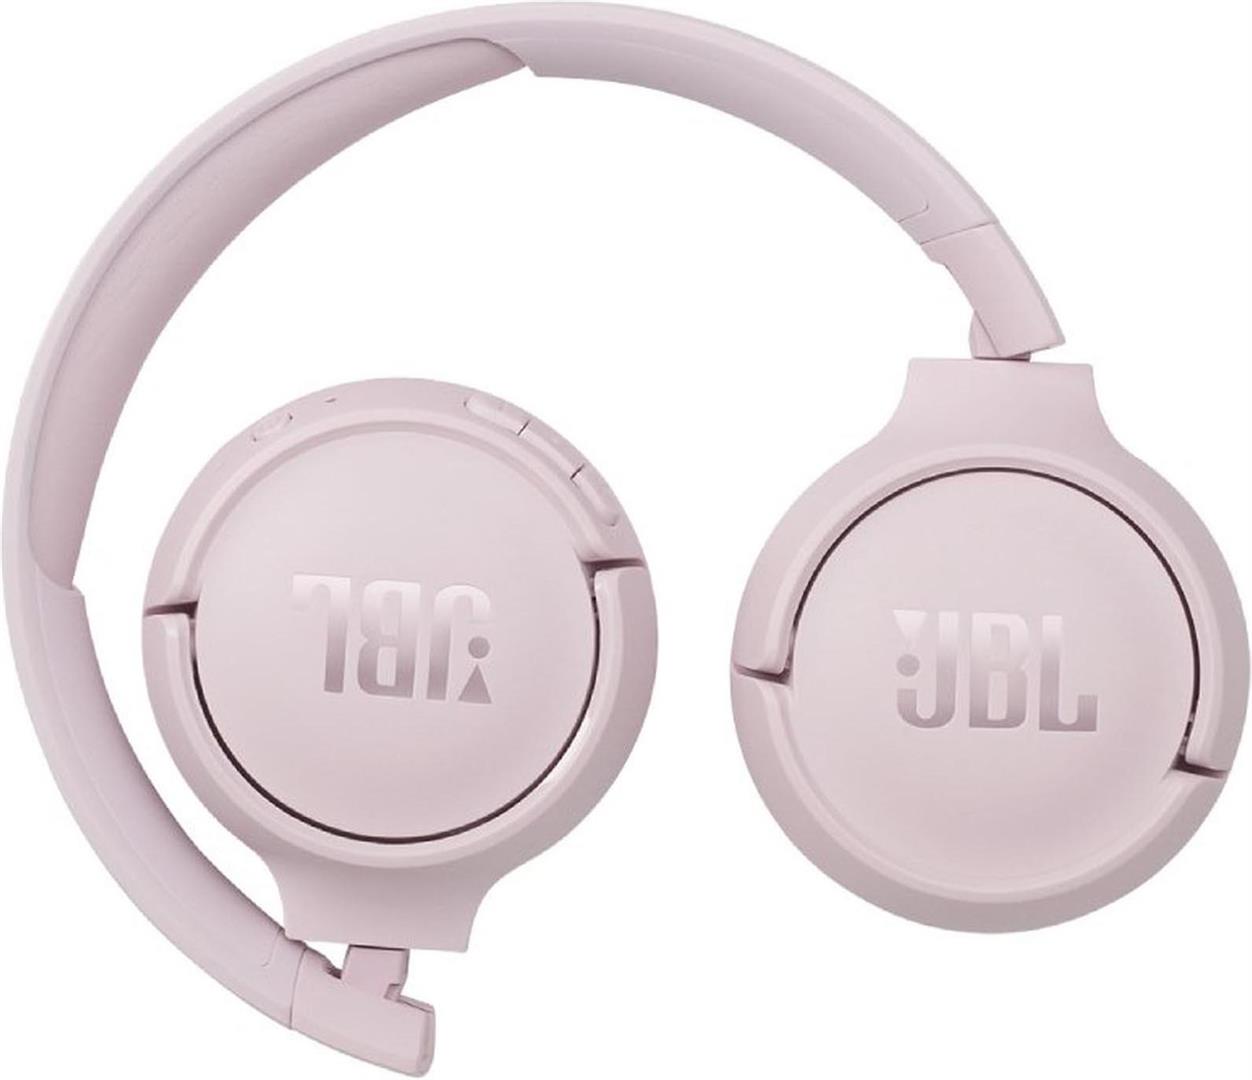 Auriculares JBL Tune 500 - Blanco - CD Market Argentina - Venta en  Argentina de Consolas, Videojuegos, Gadgets, y Merchandising